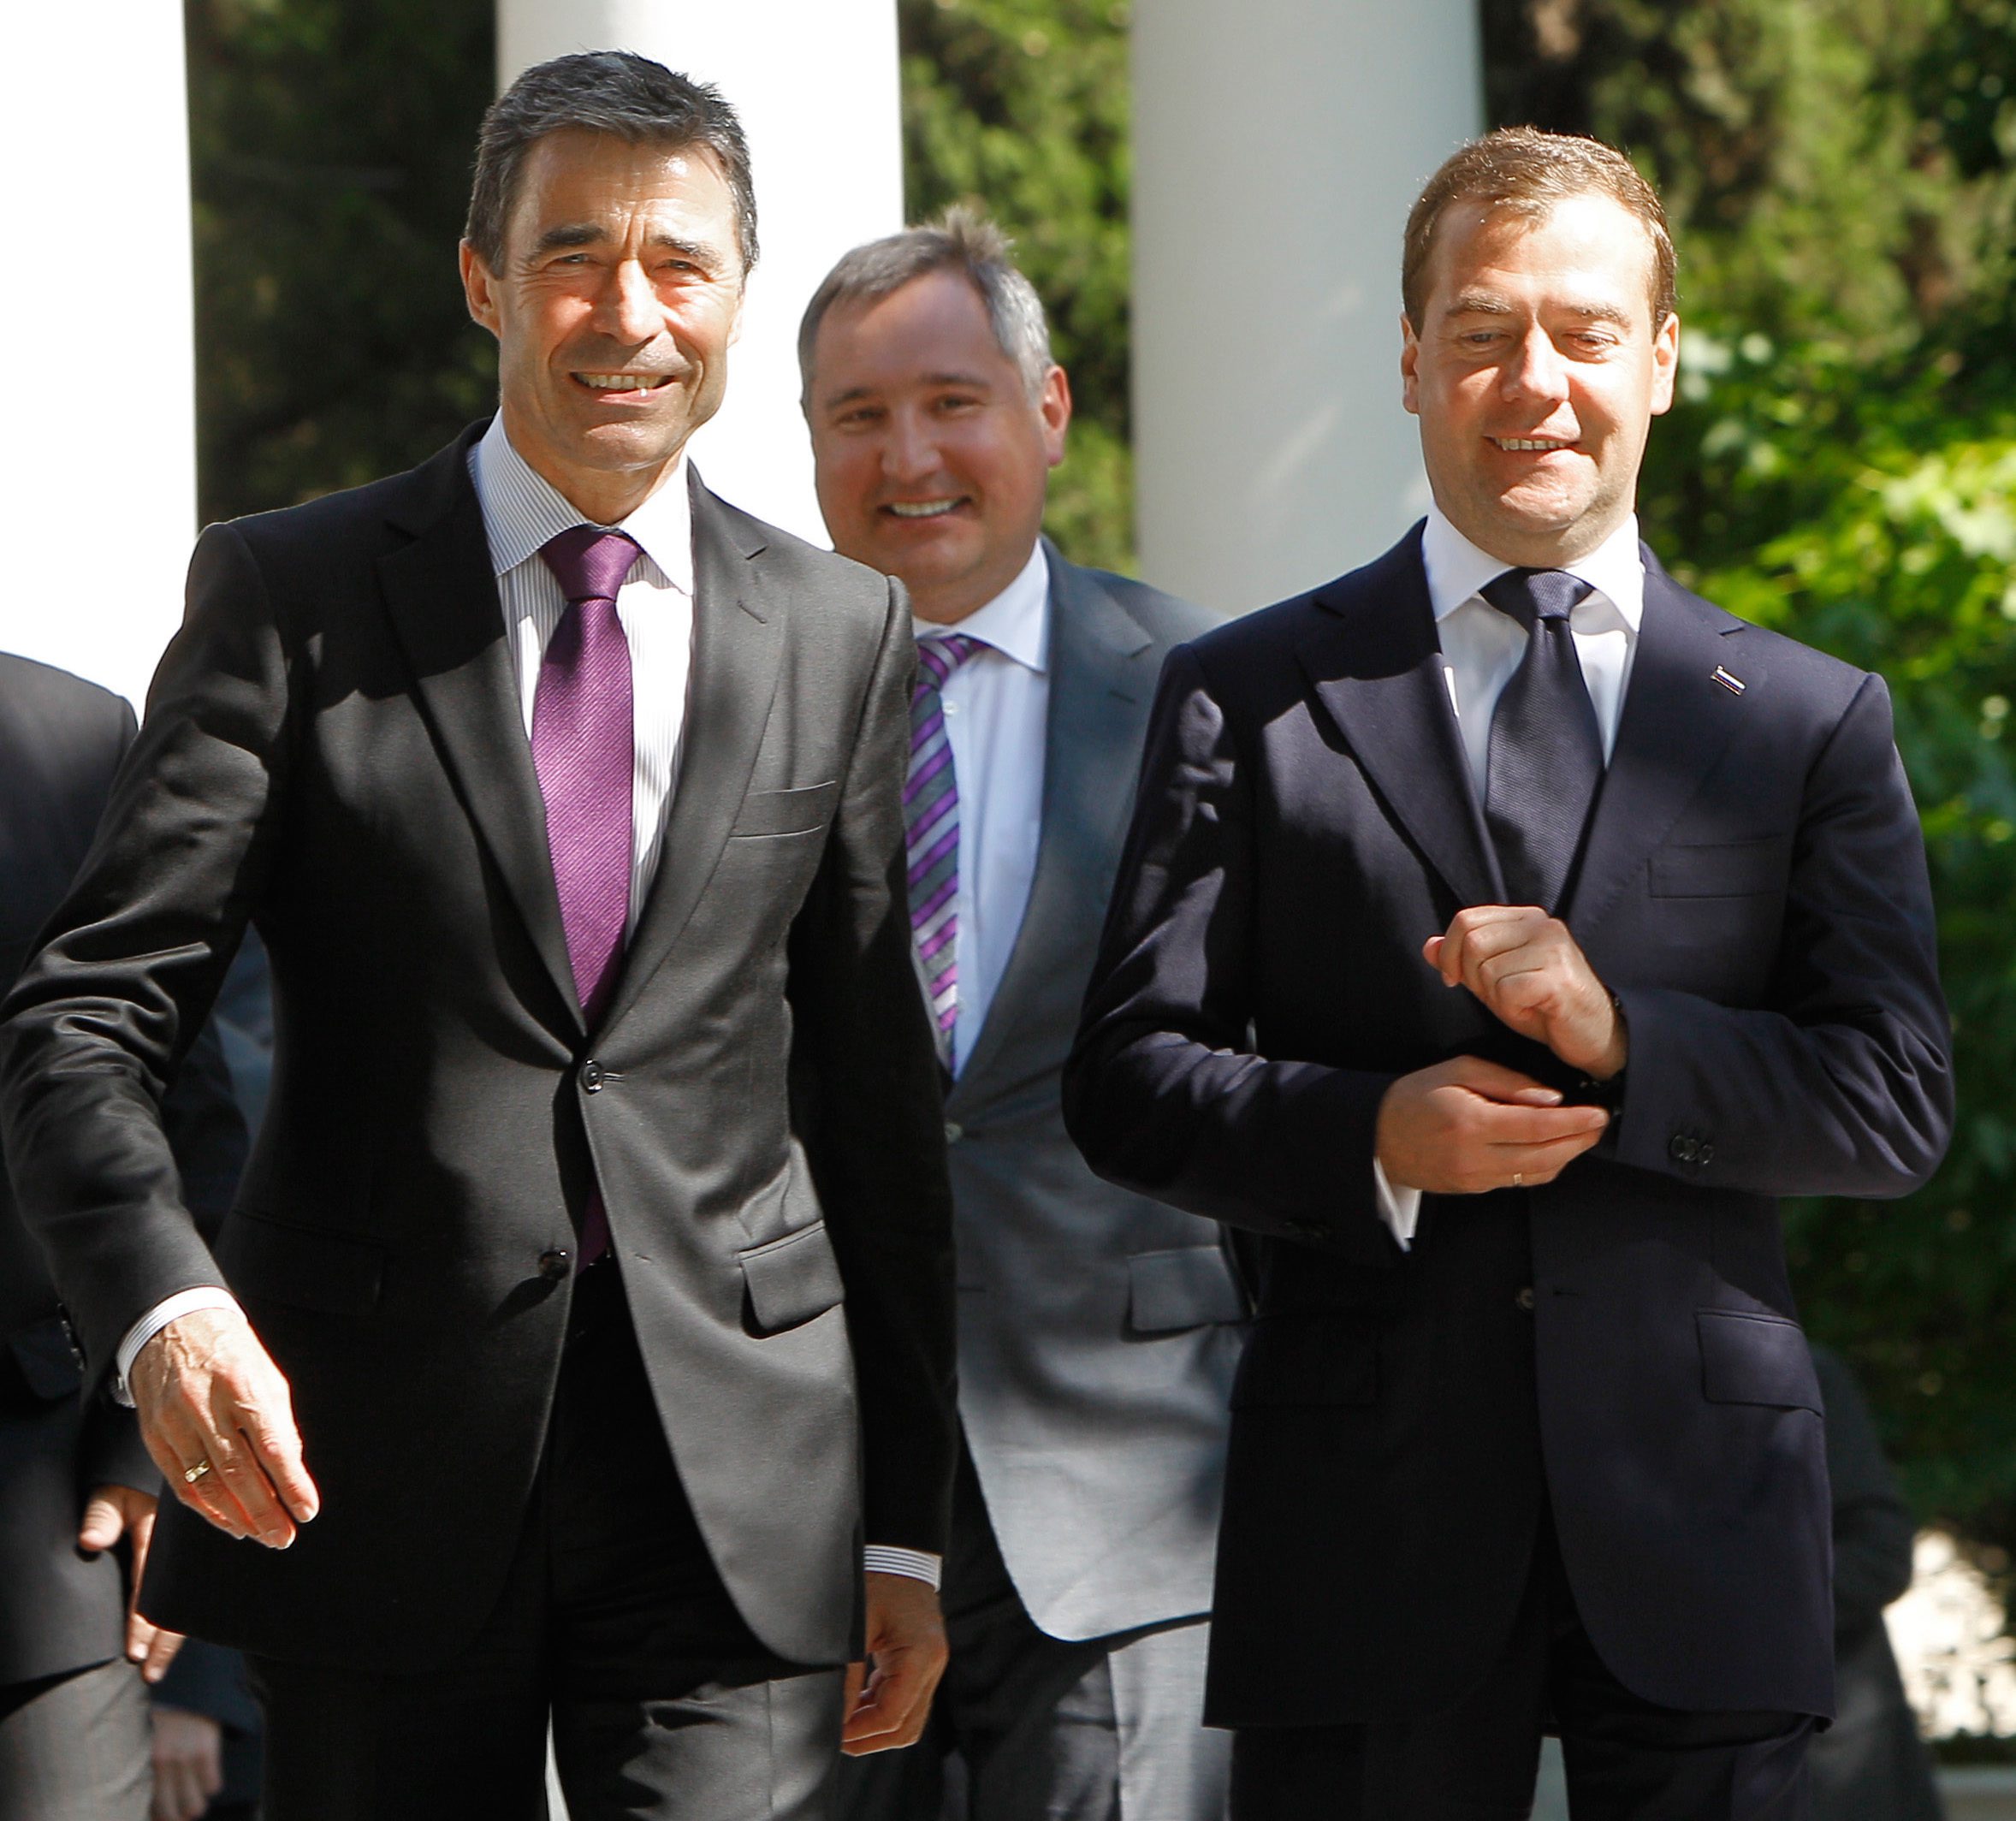 Дмитрий Рогозин между генералния секретар на НАТО Андерс Фог Расмусен и президента Дмитрий Медведев по време на среща НАТО-Русия